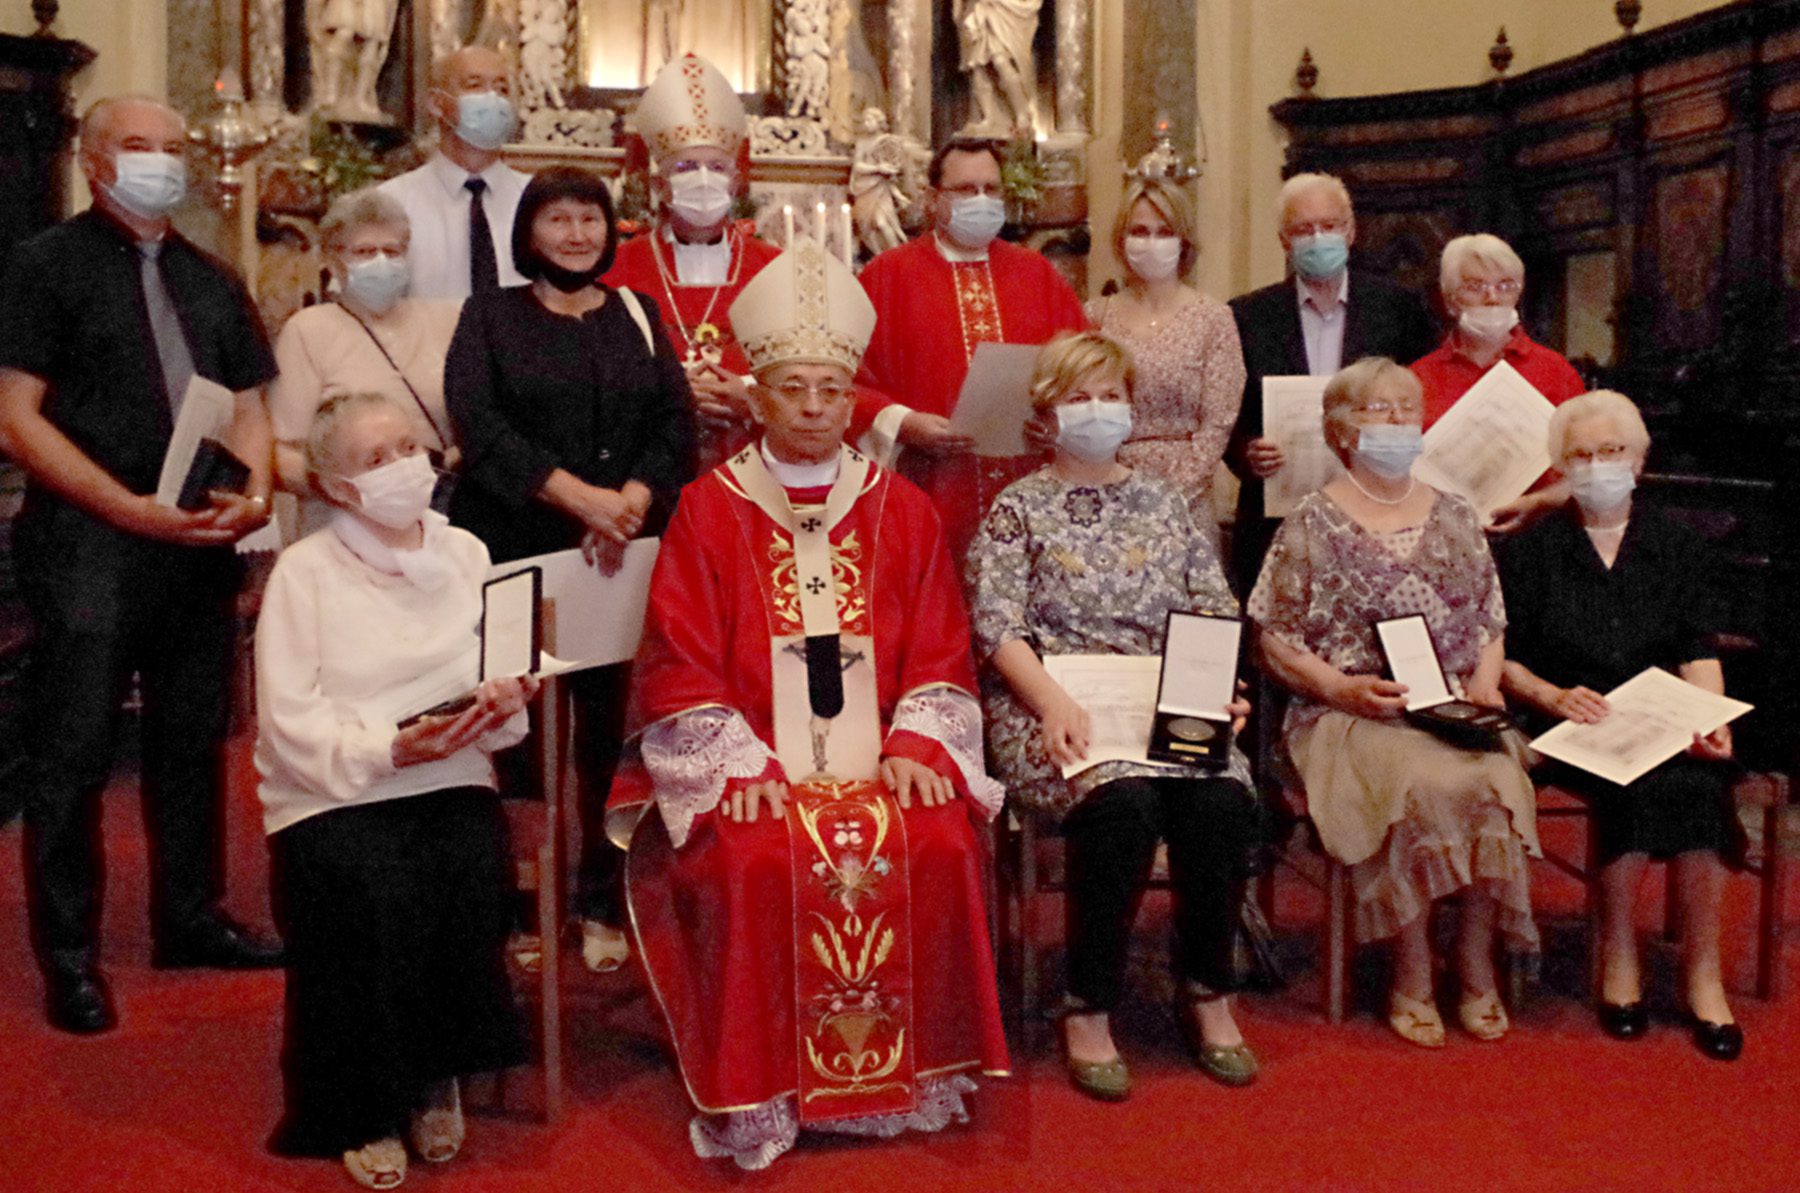 Pontifikalna misa blagdana sv. Vida: Medalje zahvalnosti ustanovama posvećenim borbi protiv pandemije